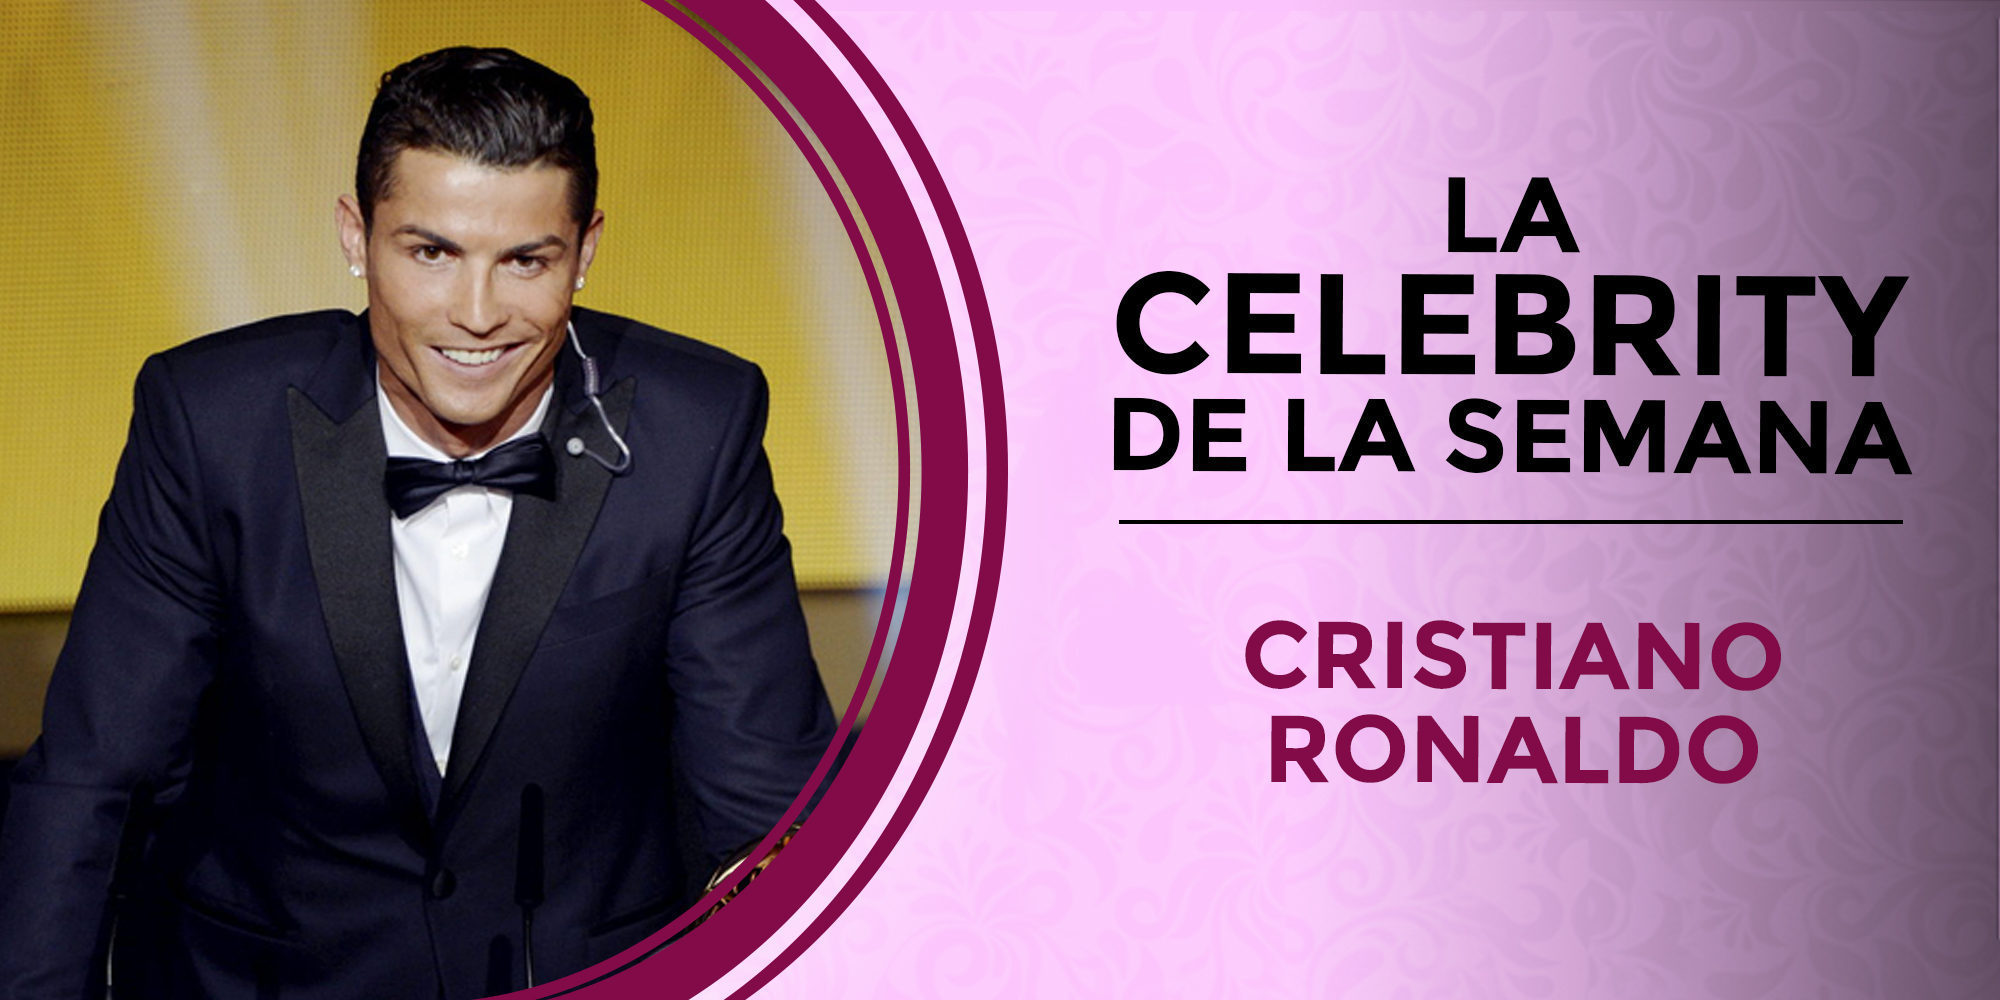 Cristiano Ronaldo, la celebrity de la semana por su implicación en el caso 'Football Leaks'